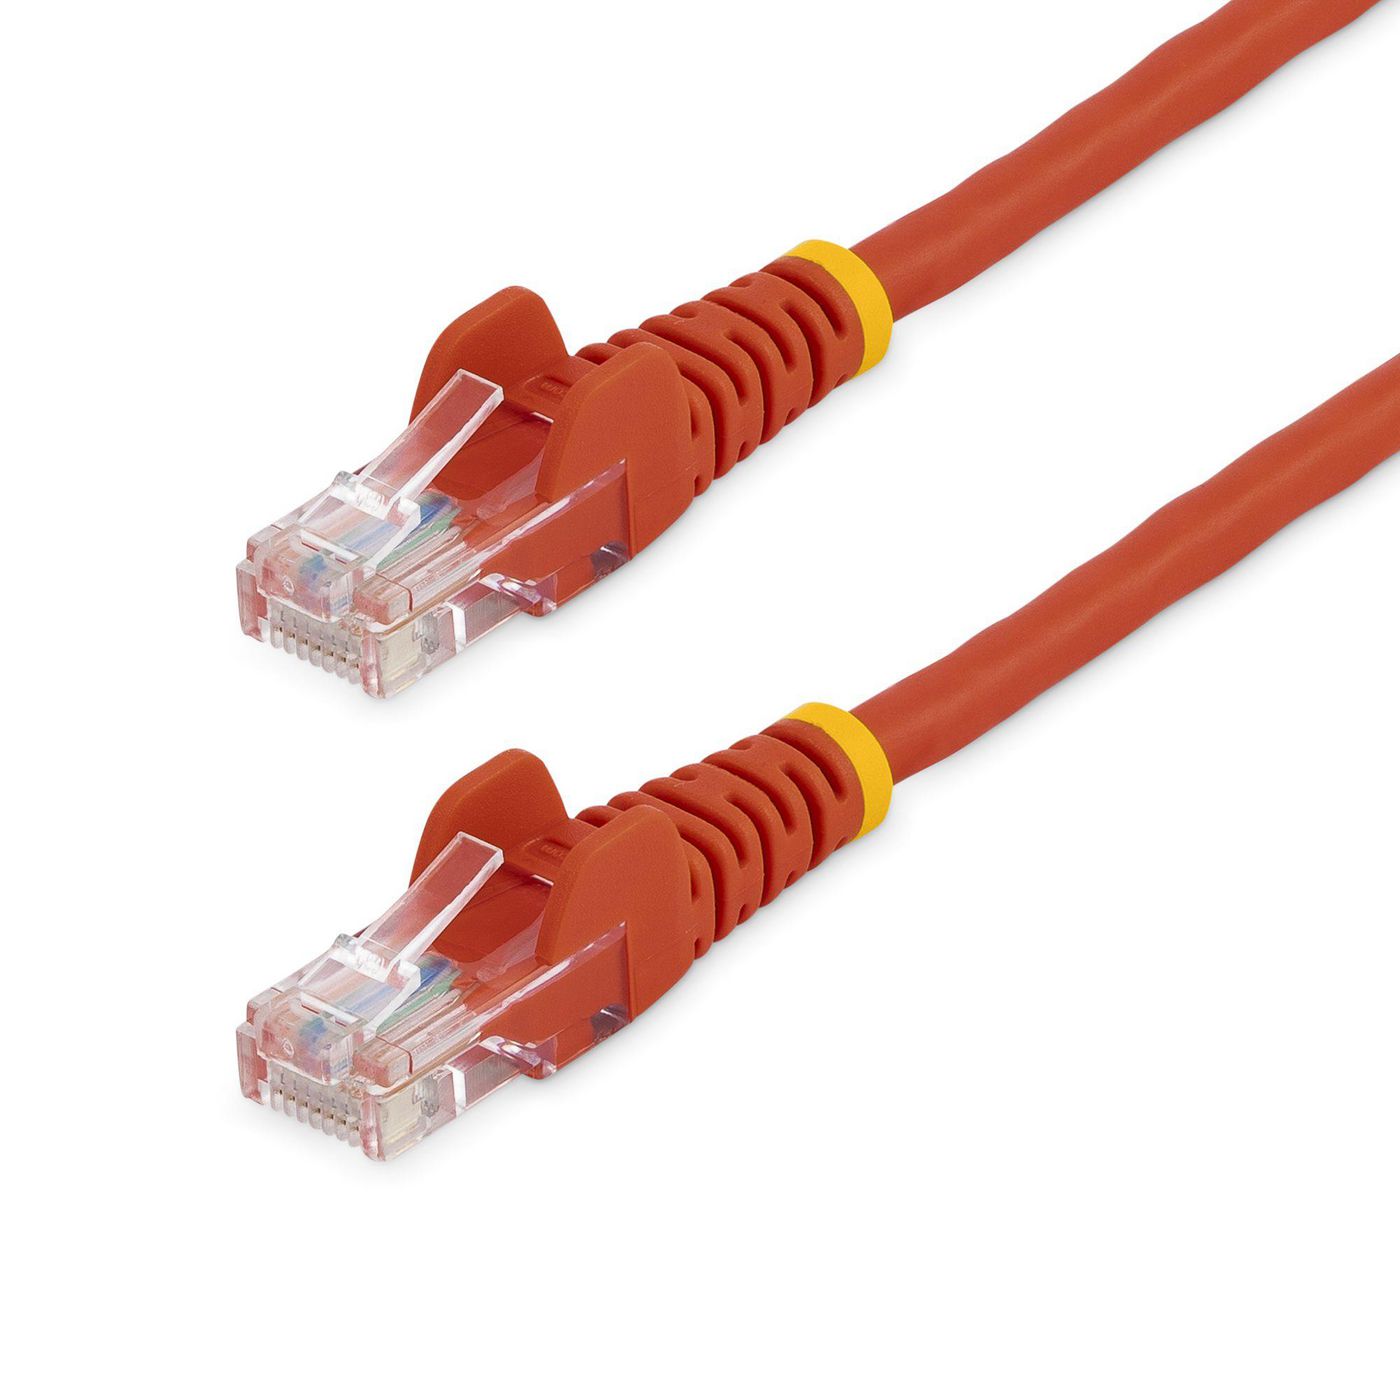 STARTECH.COM 7m Cat5e Ethernet Netzwerkkabel Snagless mit RJ45 - Cat 5e UTP Kabel - Rot